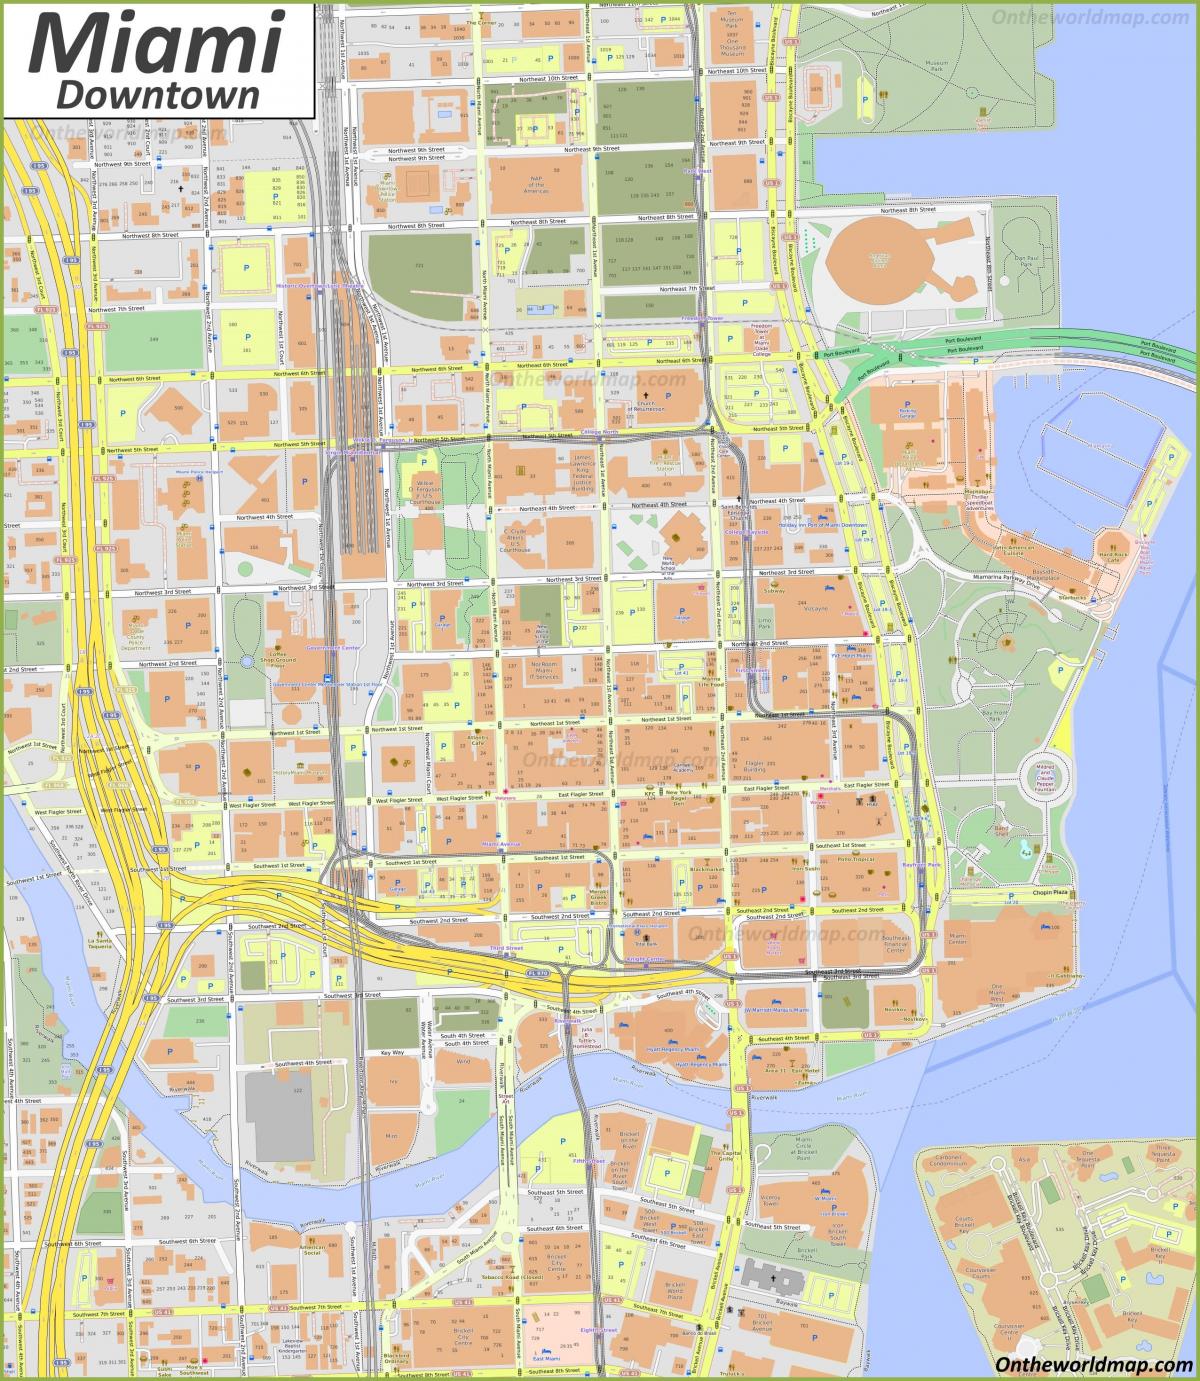 Plan des rues de Miami